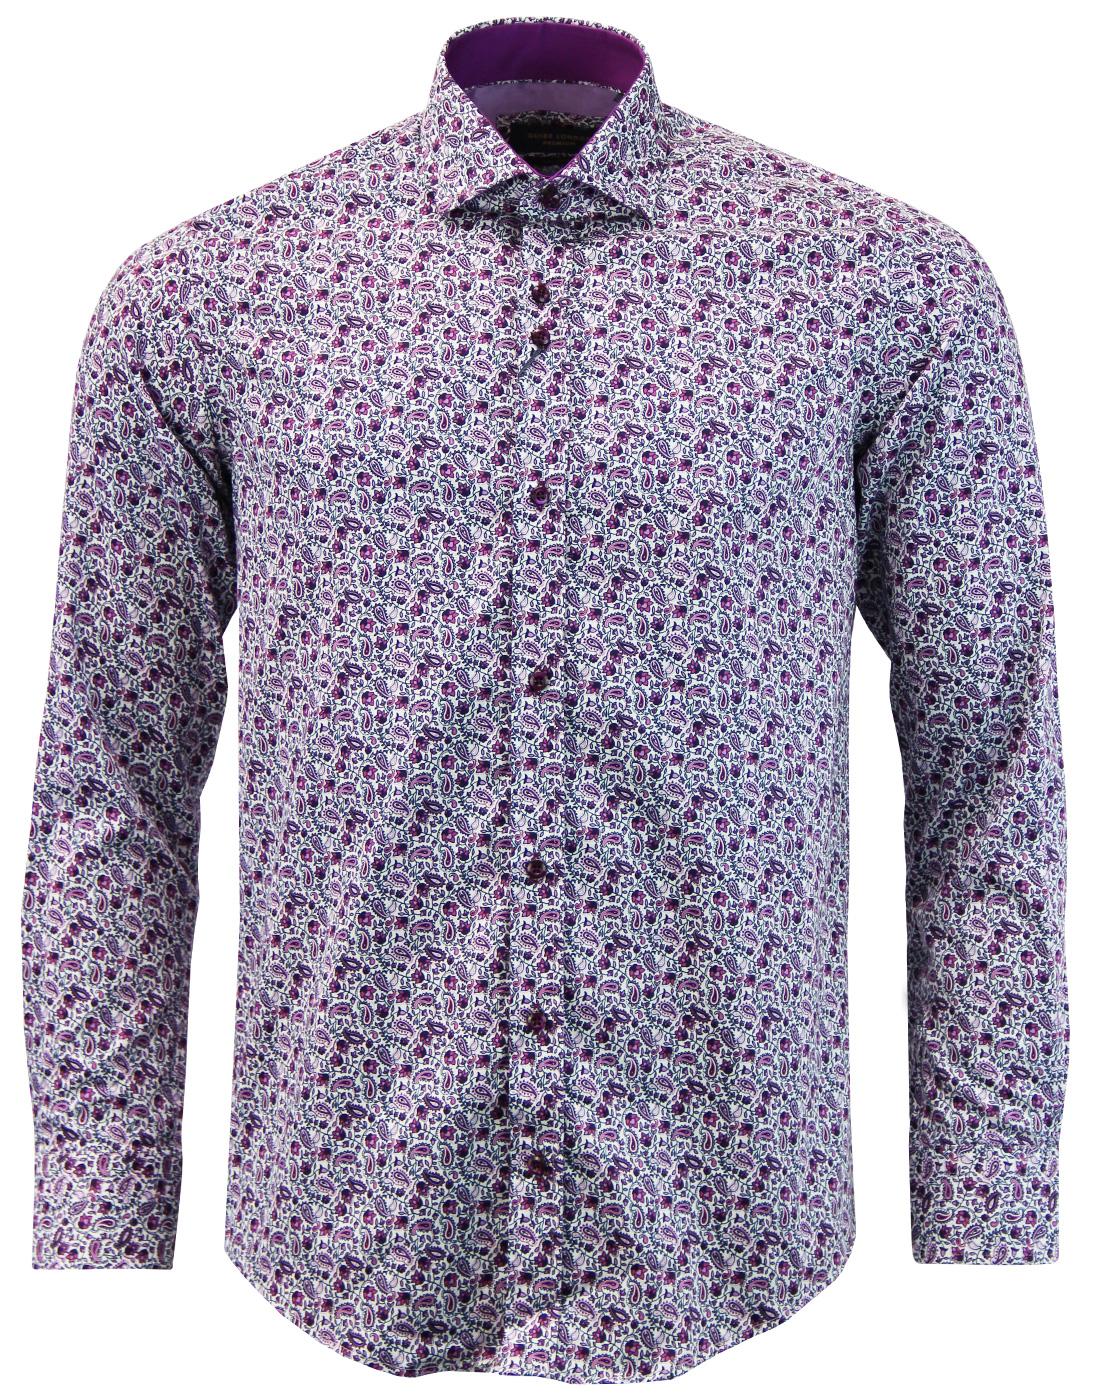 GUIDE LONDON 1960s Mod Floral Paisley Shirt PLUM